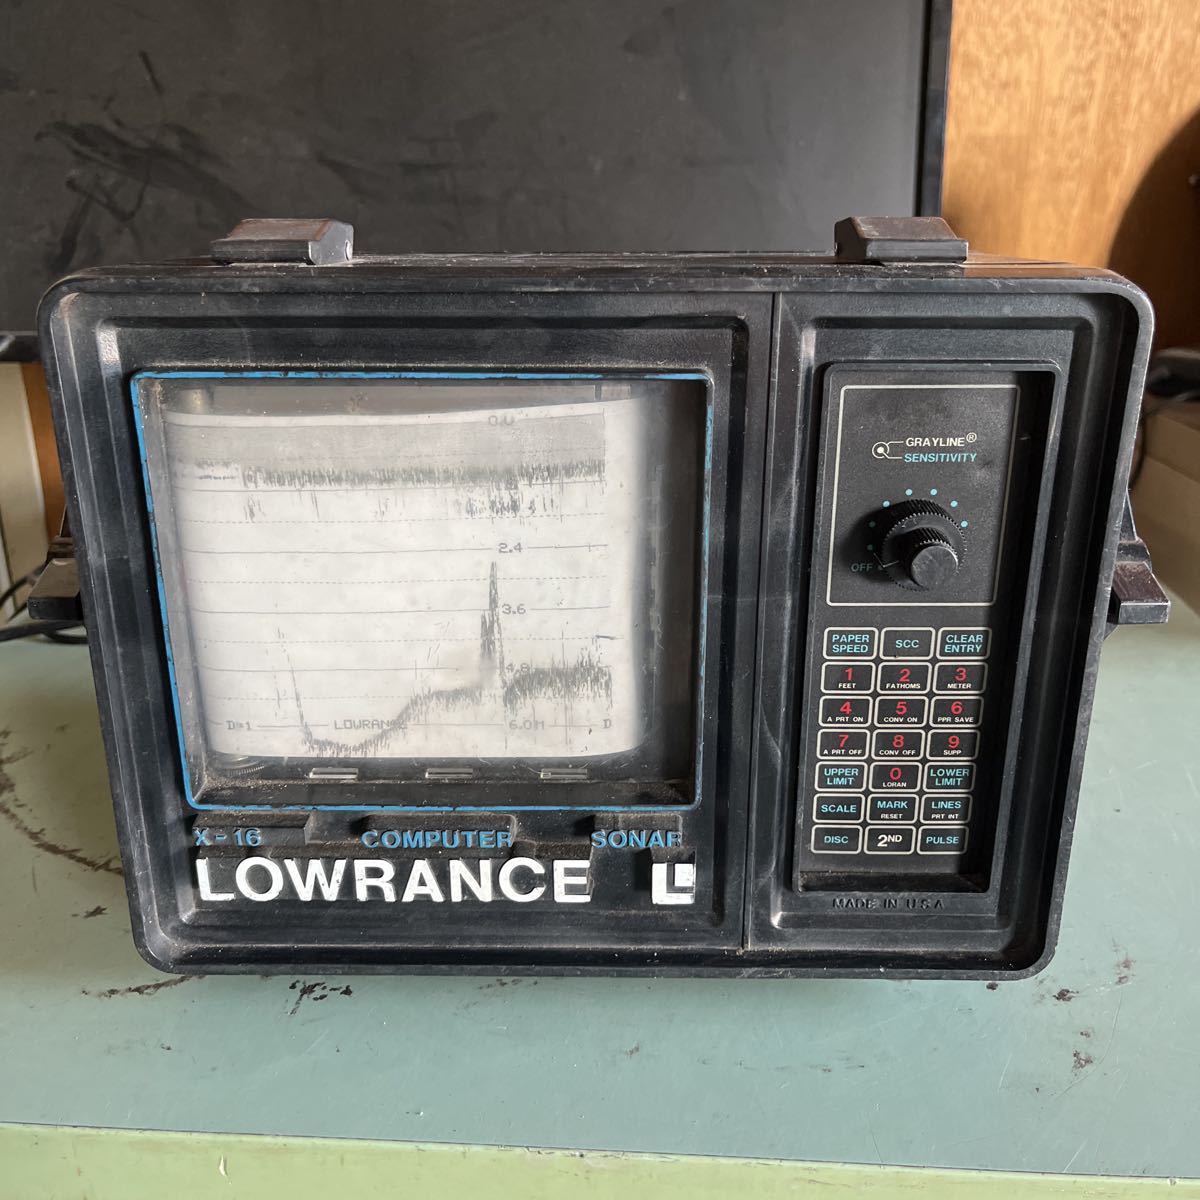 LOWRANCE ローランス 魚群探知機 x-16 ジャンク